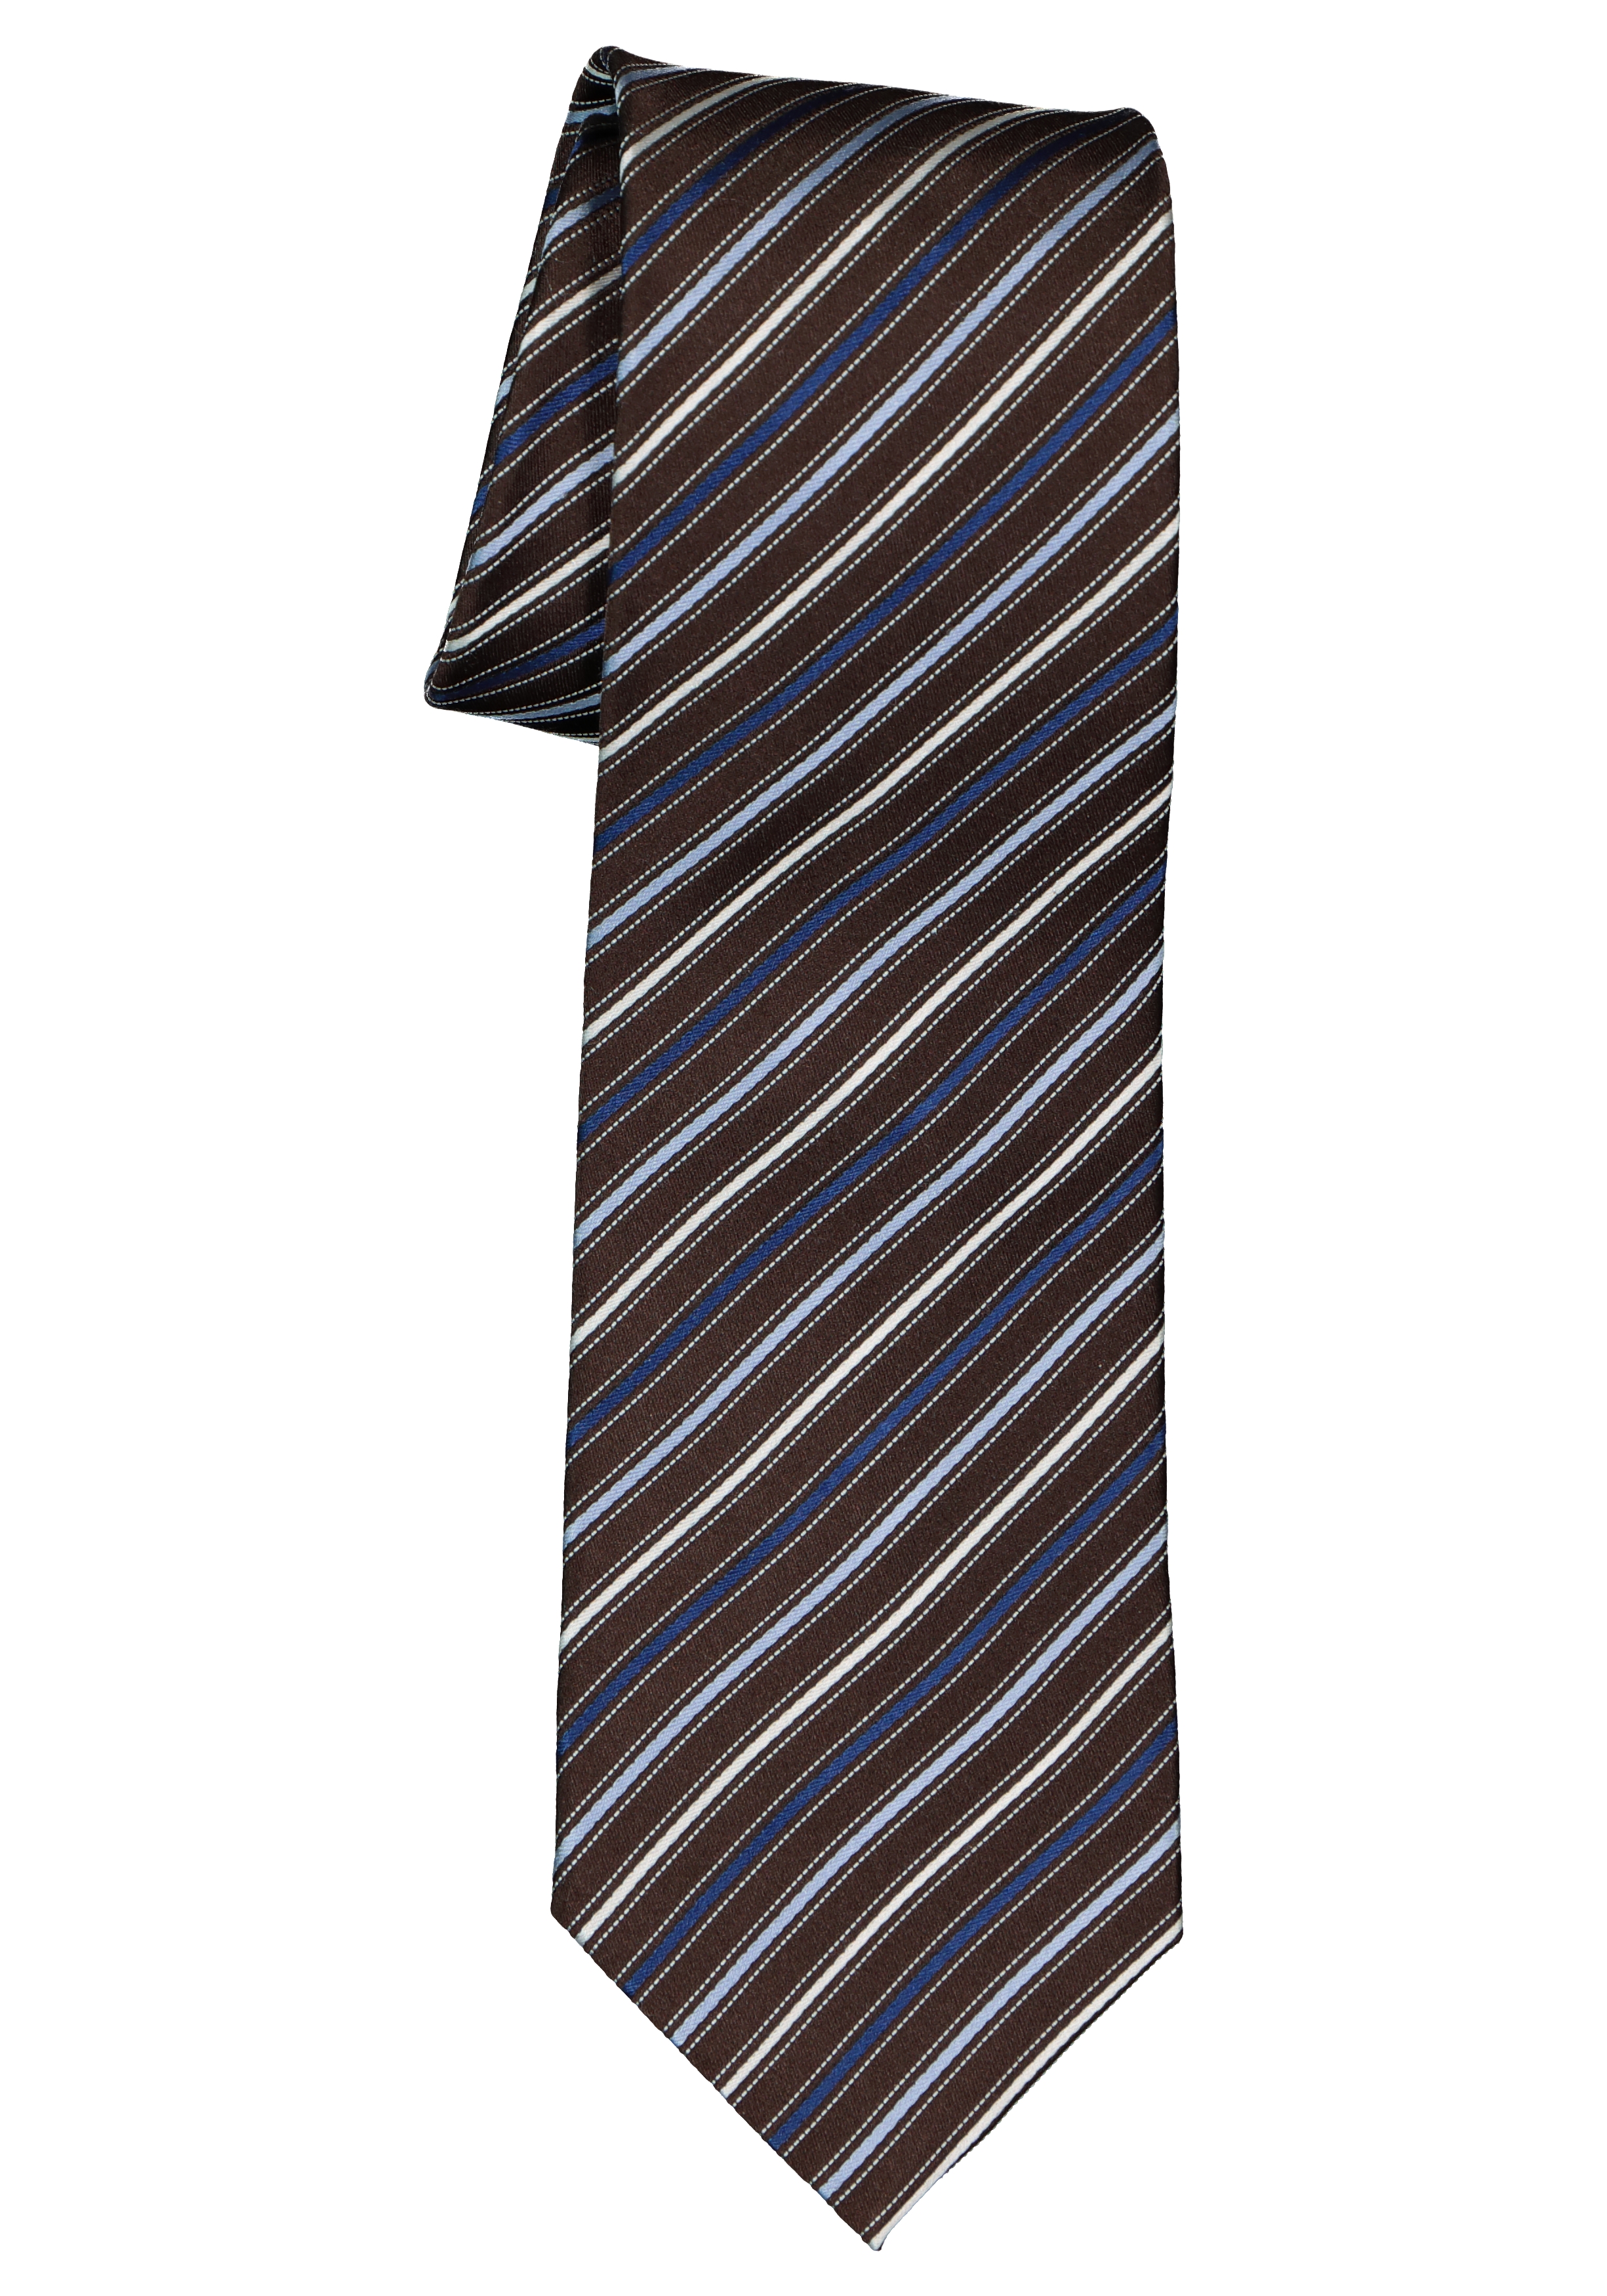 Michaelis  stropdas, zijde, donkerbruin met blauw en wit gestreept